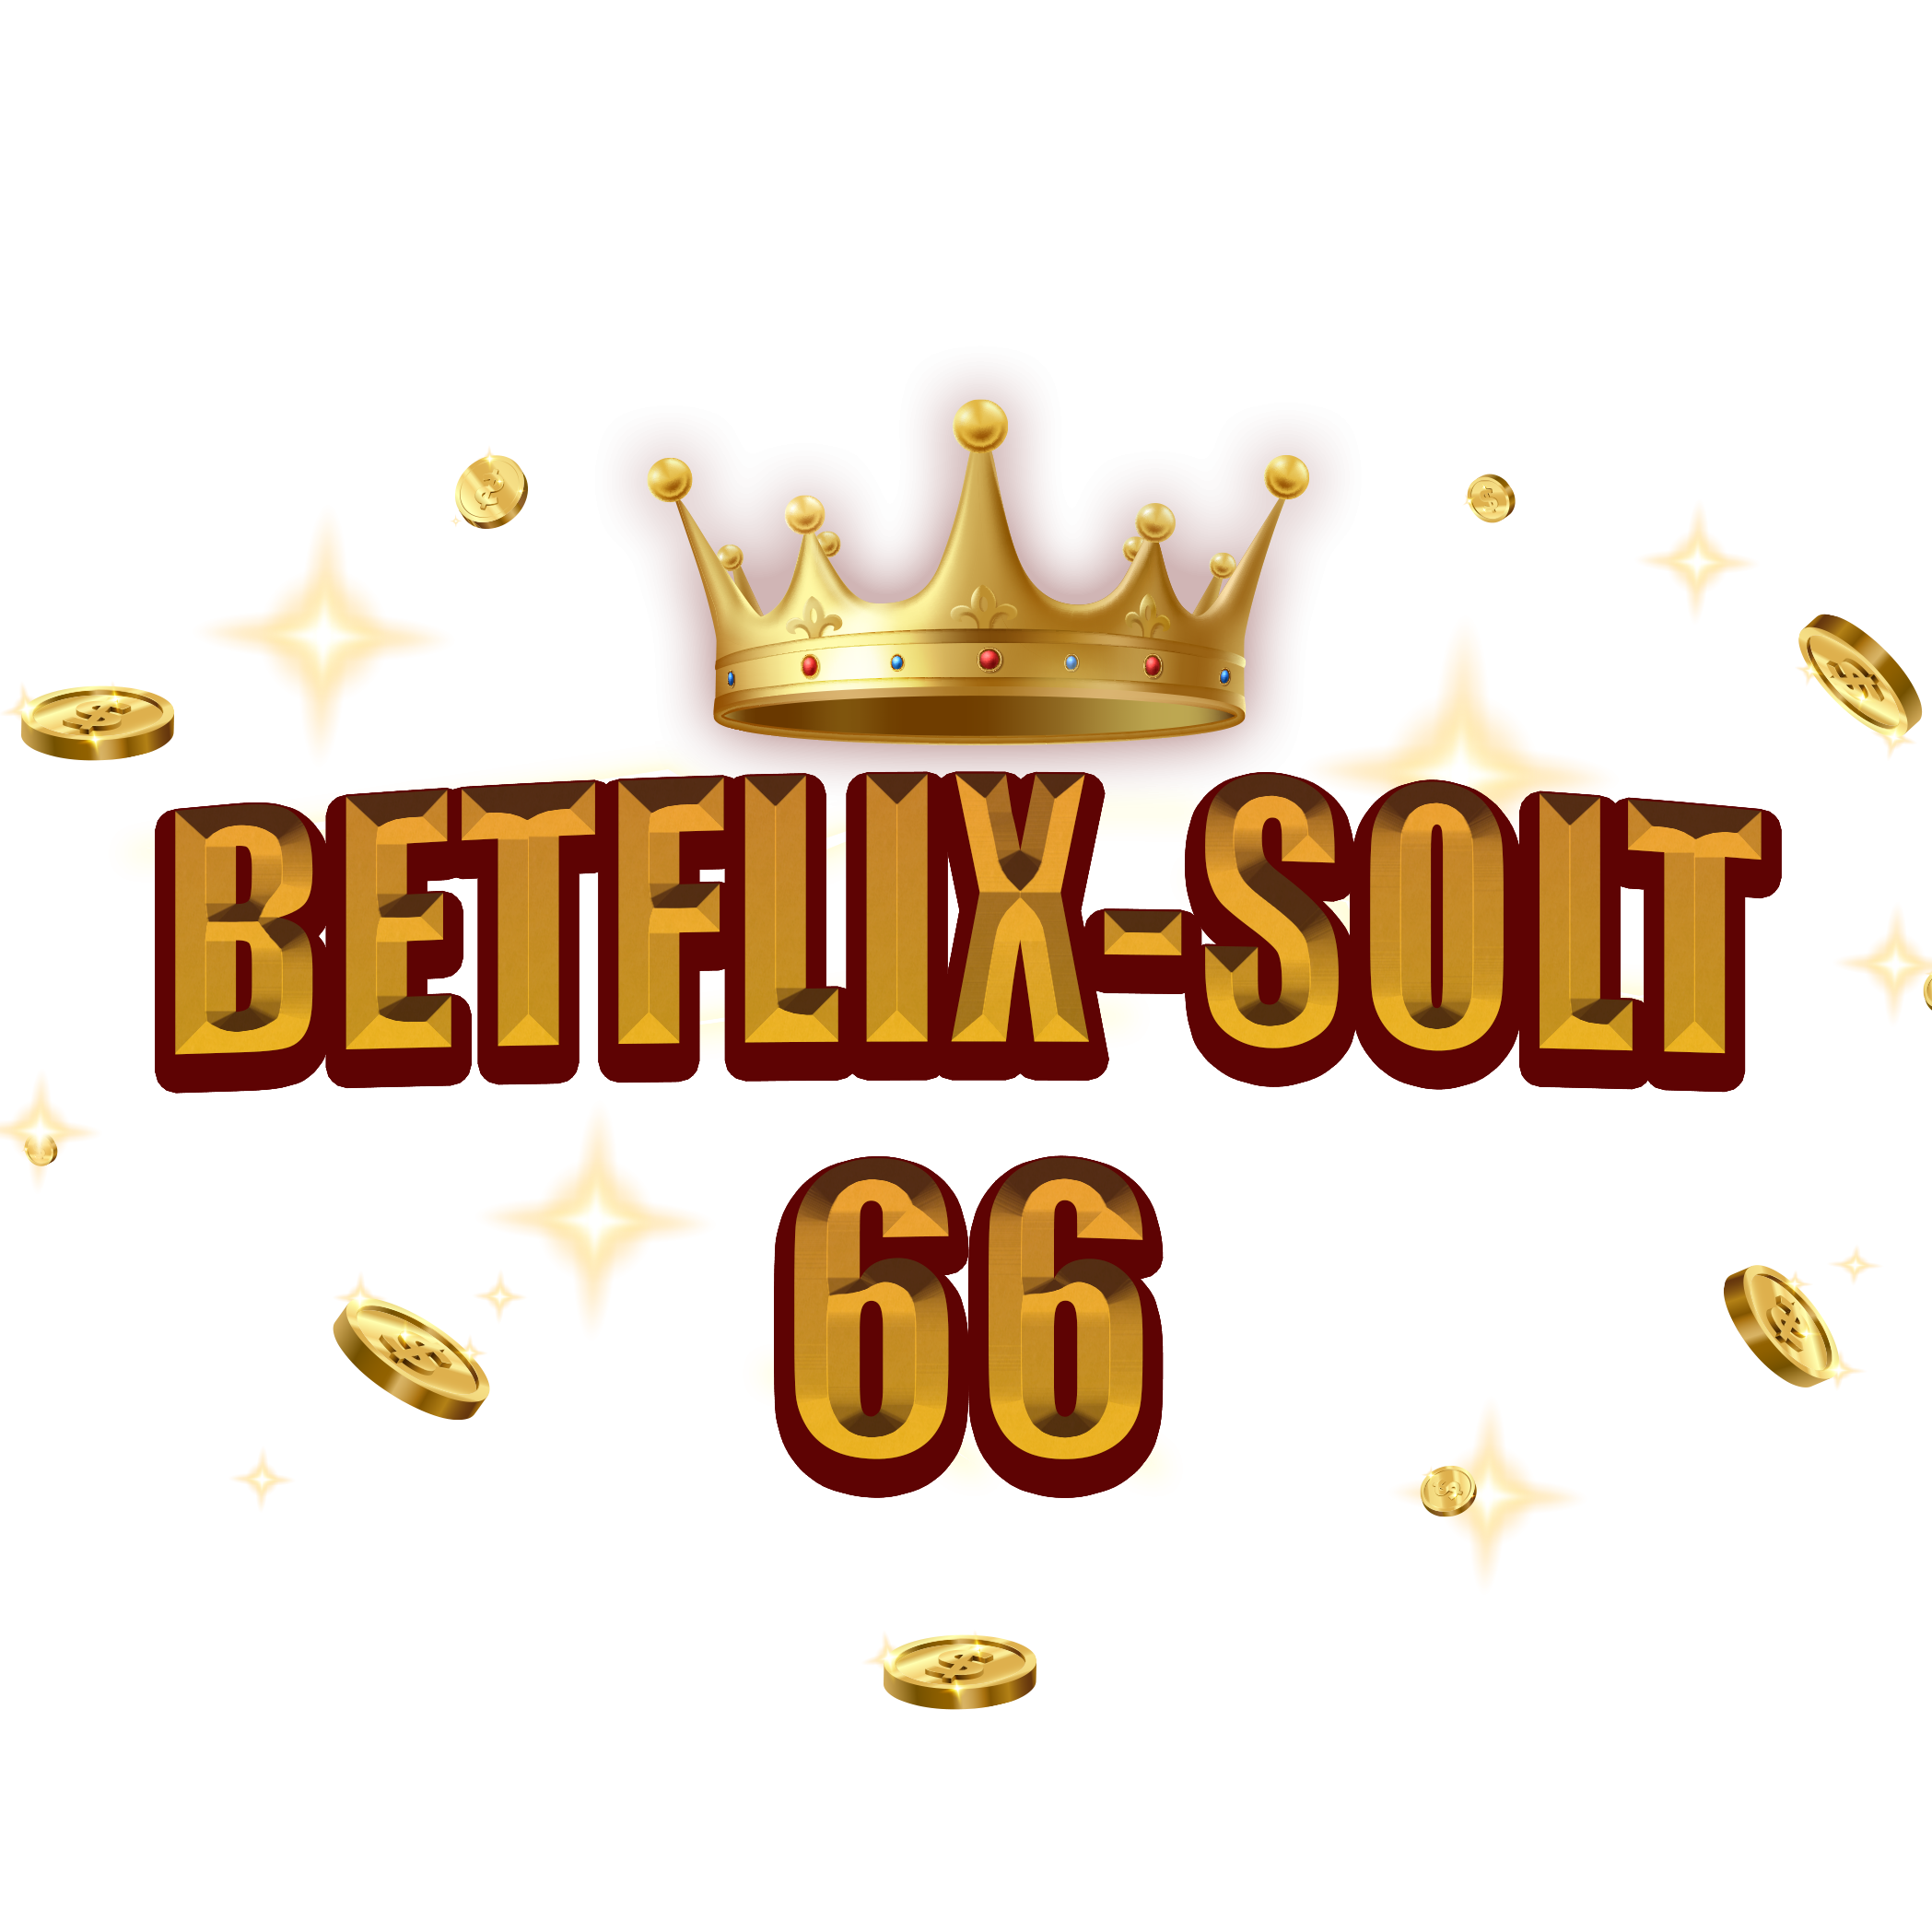 BETFLIX-SOLT66